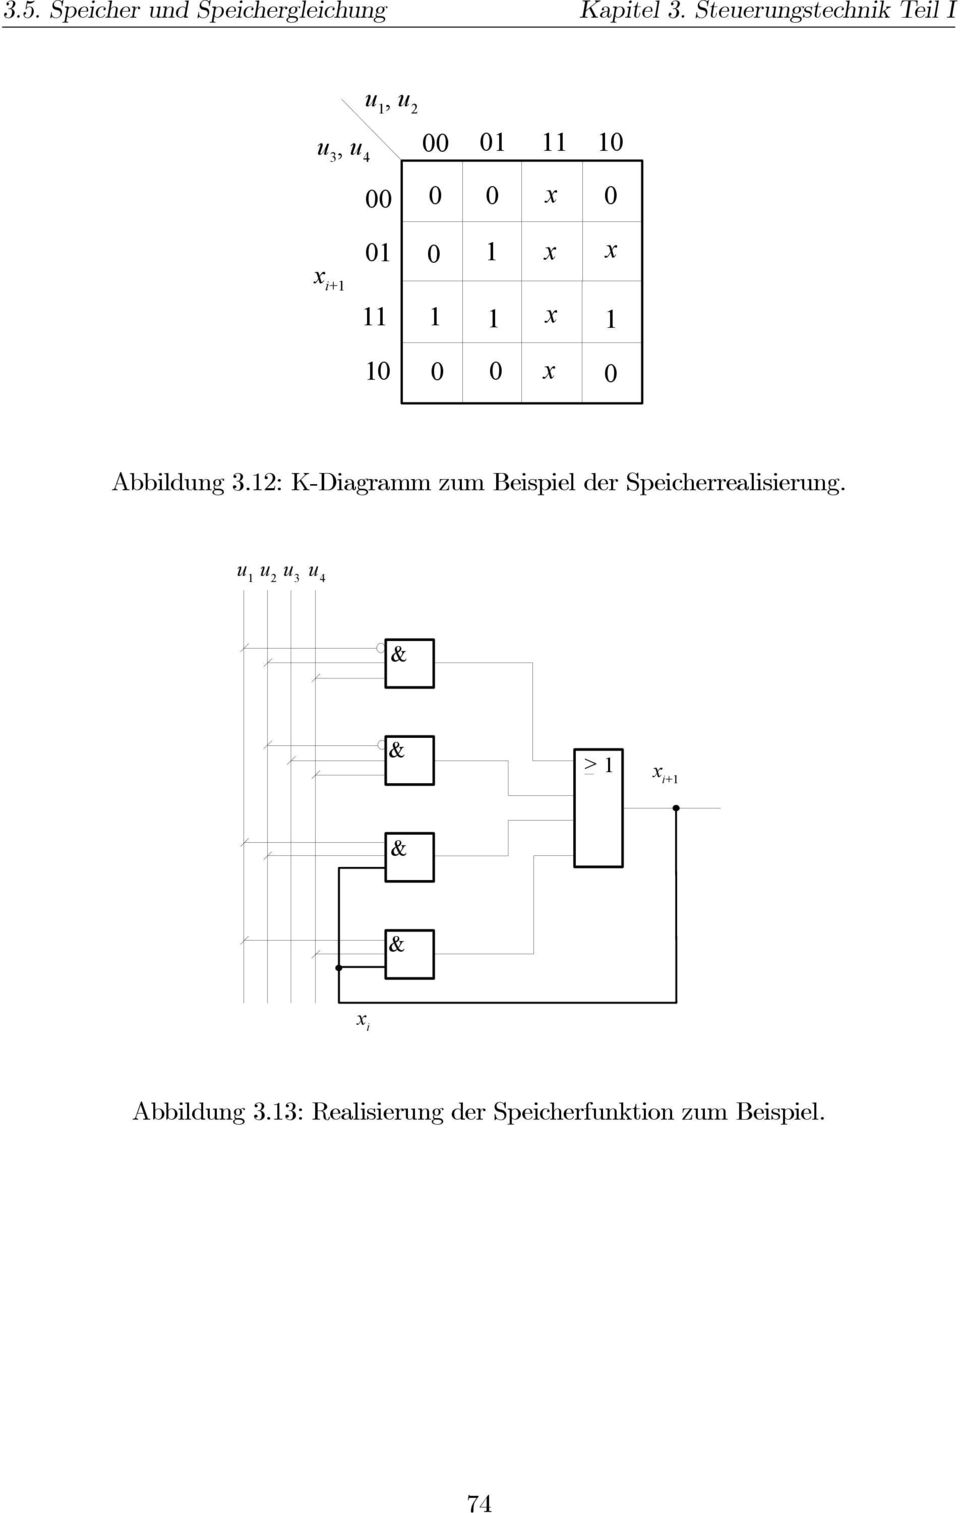 Abbildung 3.2: K-Diagramm zum Beispiel der Speicherrealisierung.